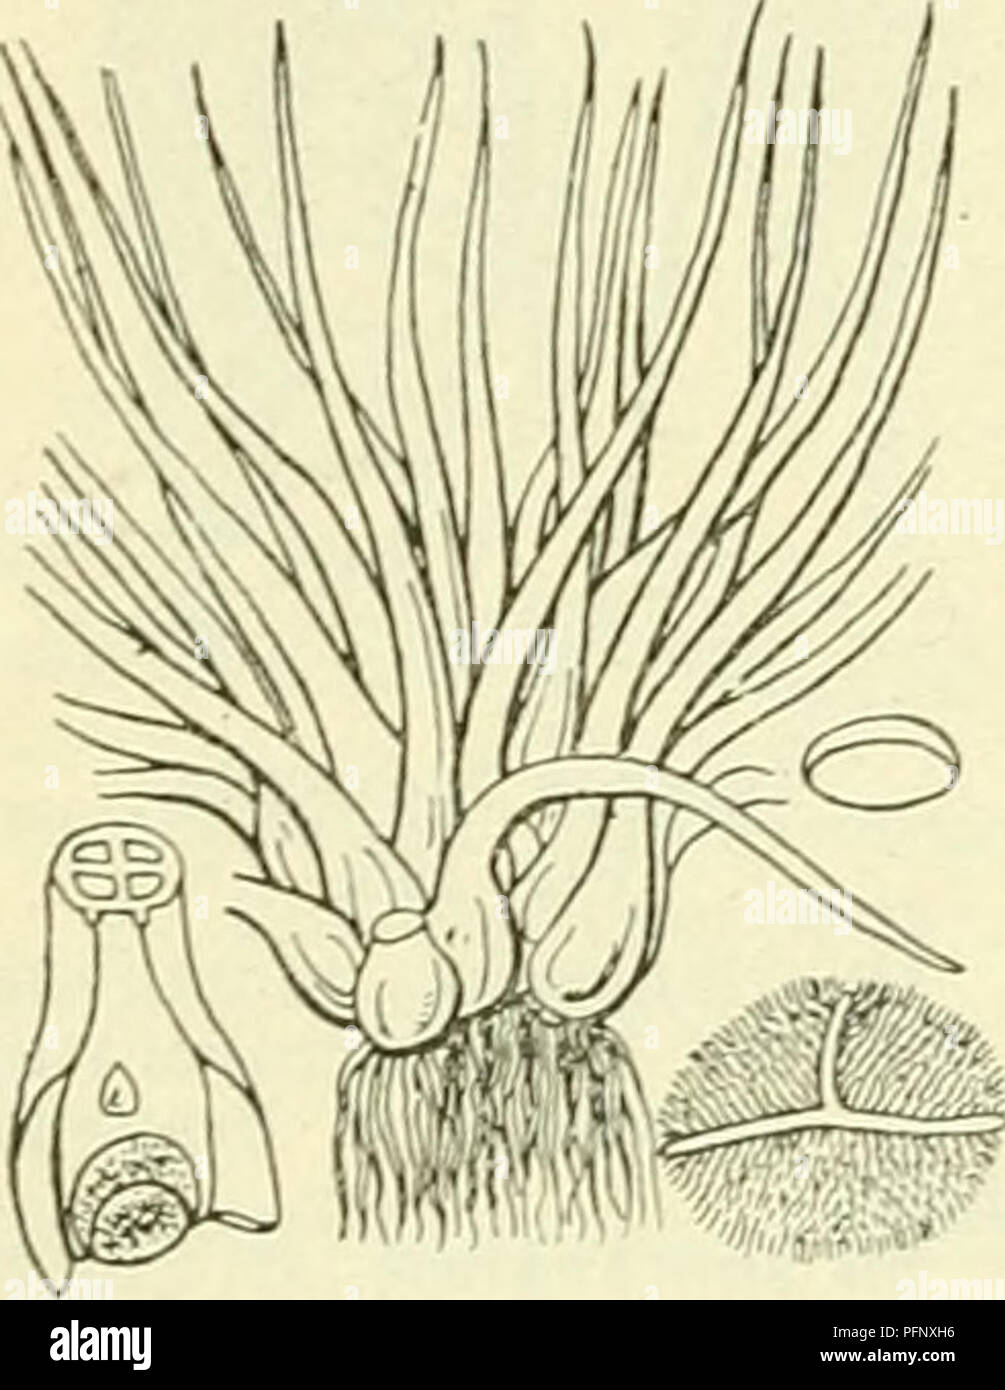 . De flora van Nederland. Plants. Isoetes lacustris Fig. 117. I. echinÃ³spora') Durieu. Stekelspoor-biesvaren (fig. 118). Bij deze ondergedoken waterplant is de stengel tot 12,5 mM dik en 2-lobbig. De bladen zijn 5-12 cM lang, geleidelijk in een fijne spits versmald, slap (bij het uittrekken uit het water in bundels aan elkaar klevend), lichtgroen. Het dekvliesje is onvolledig. De macrosporen (fig. 118) zijn bolrond, kleiner dan bij de vorige, dicht met kegelvormige, vaak iets samengedrukte, spitse of afgeknotte, zeer brosse stekels bezet. De microsporen (fig. 118) hebben uitstekende kammen me Stock Photo